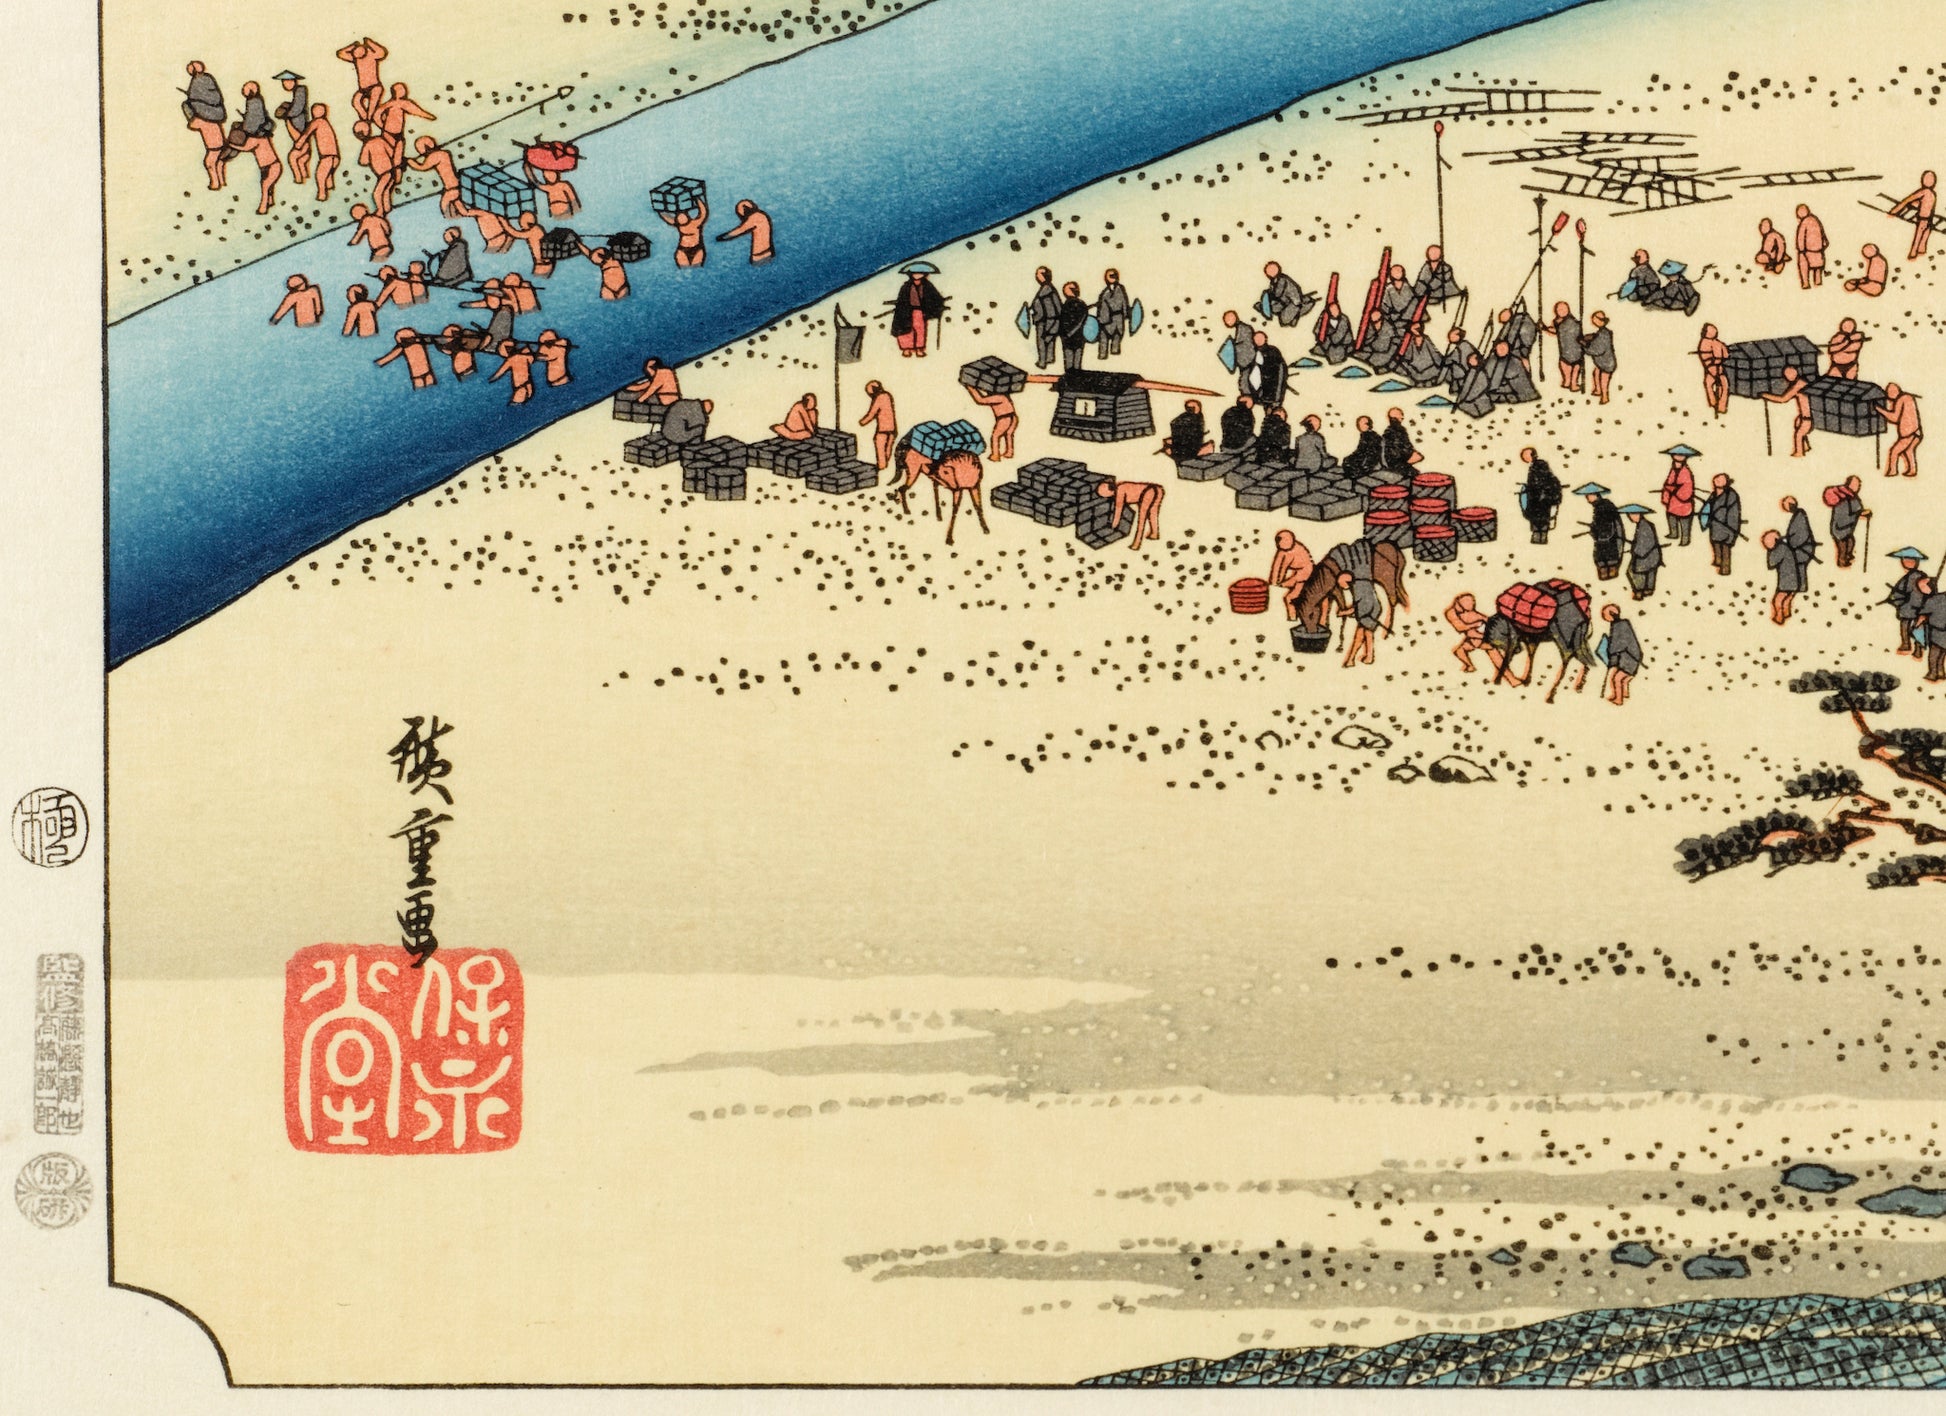 estampe japonaise de Hiroshige, des personnes traversent la rivière à pied